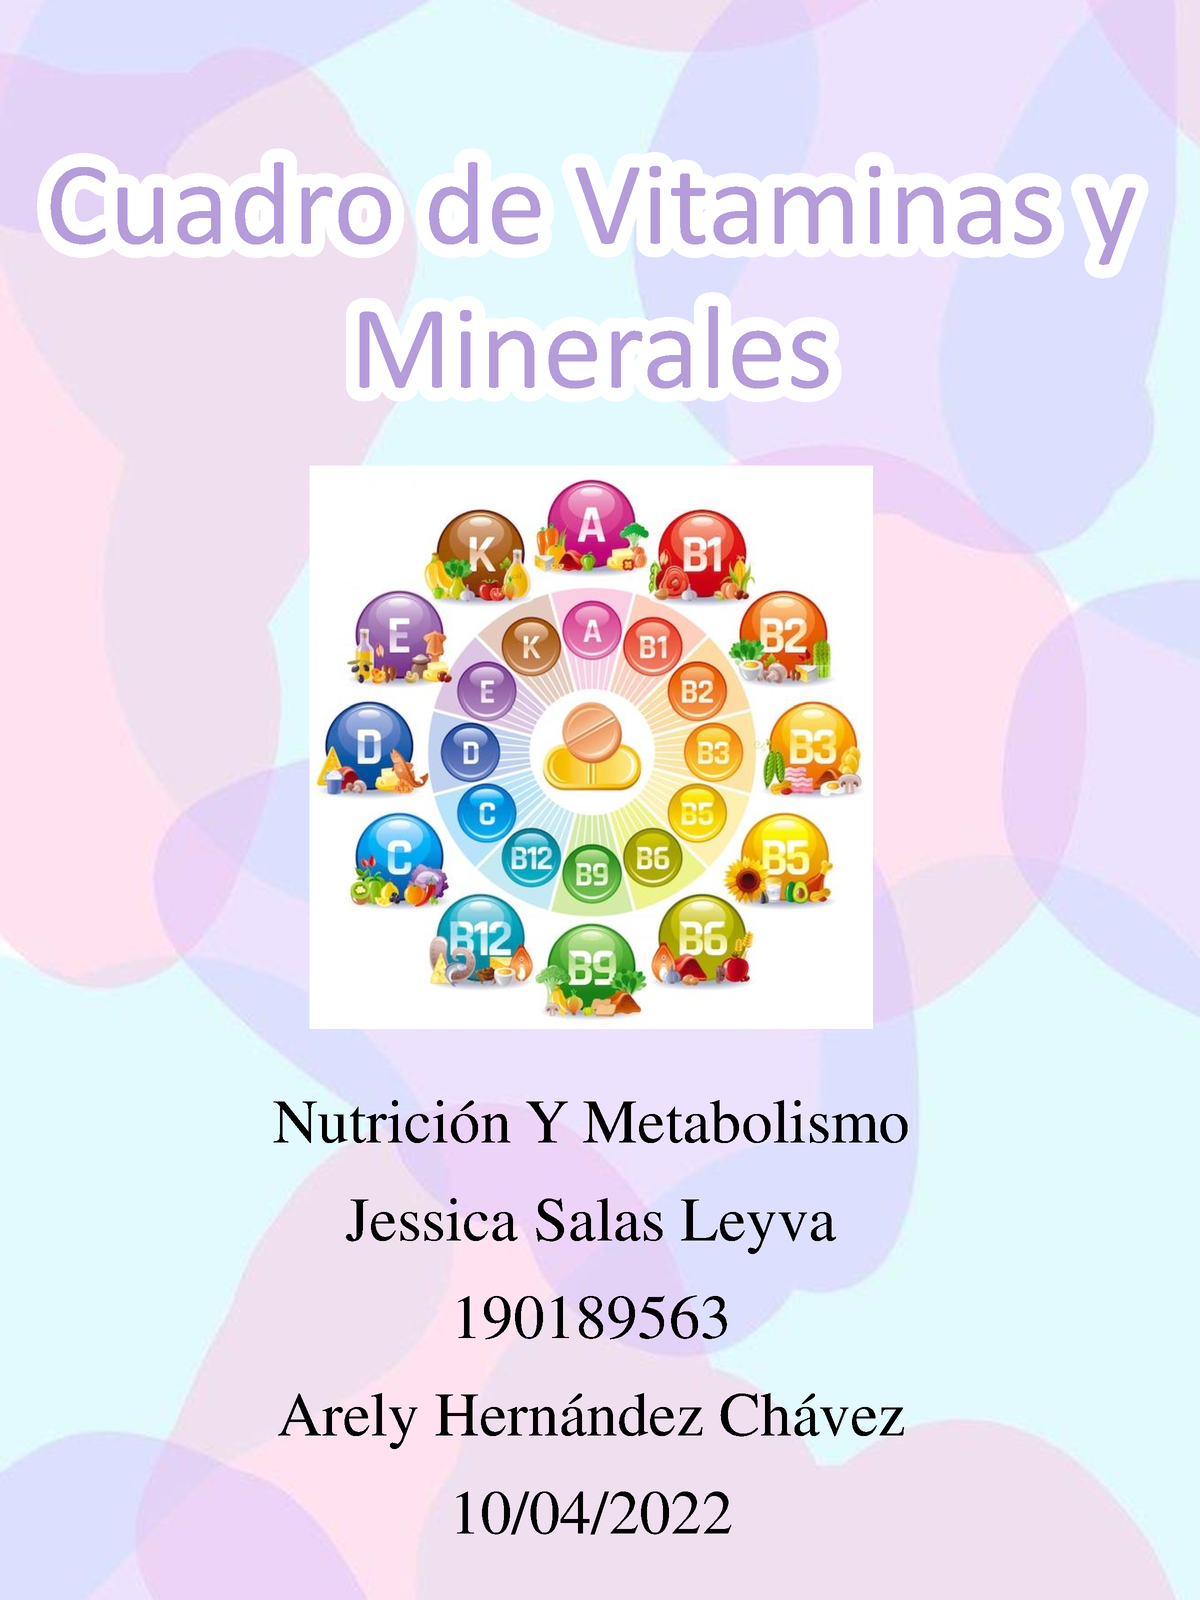 A10 Jsl Apunte Cuadro De Vitaminas Y Minerales Nutrición Y Metabolismo Jessica Salas Leyva 7668